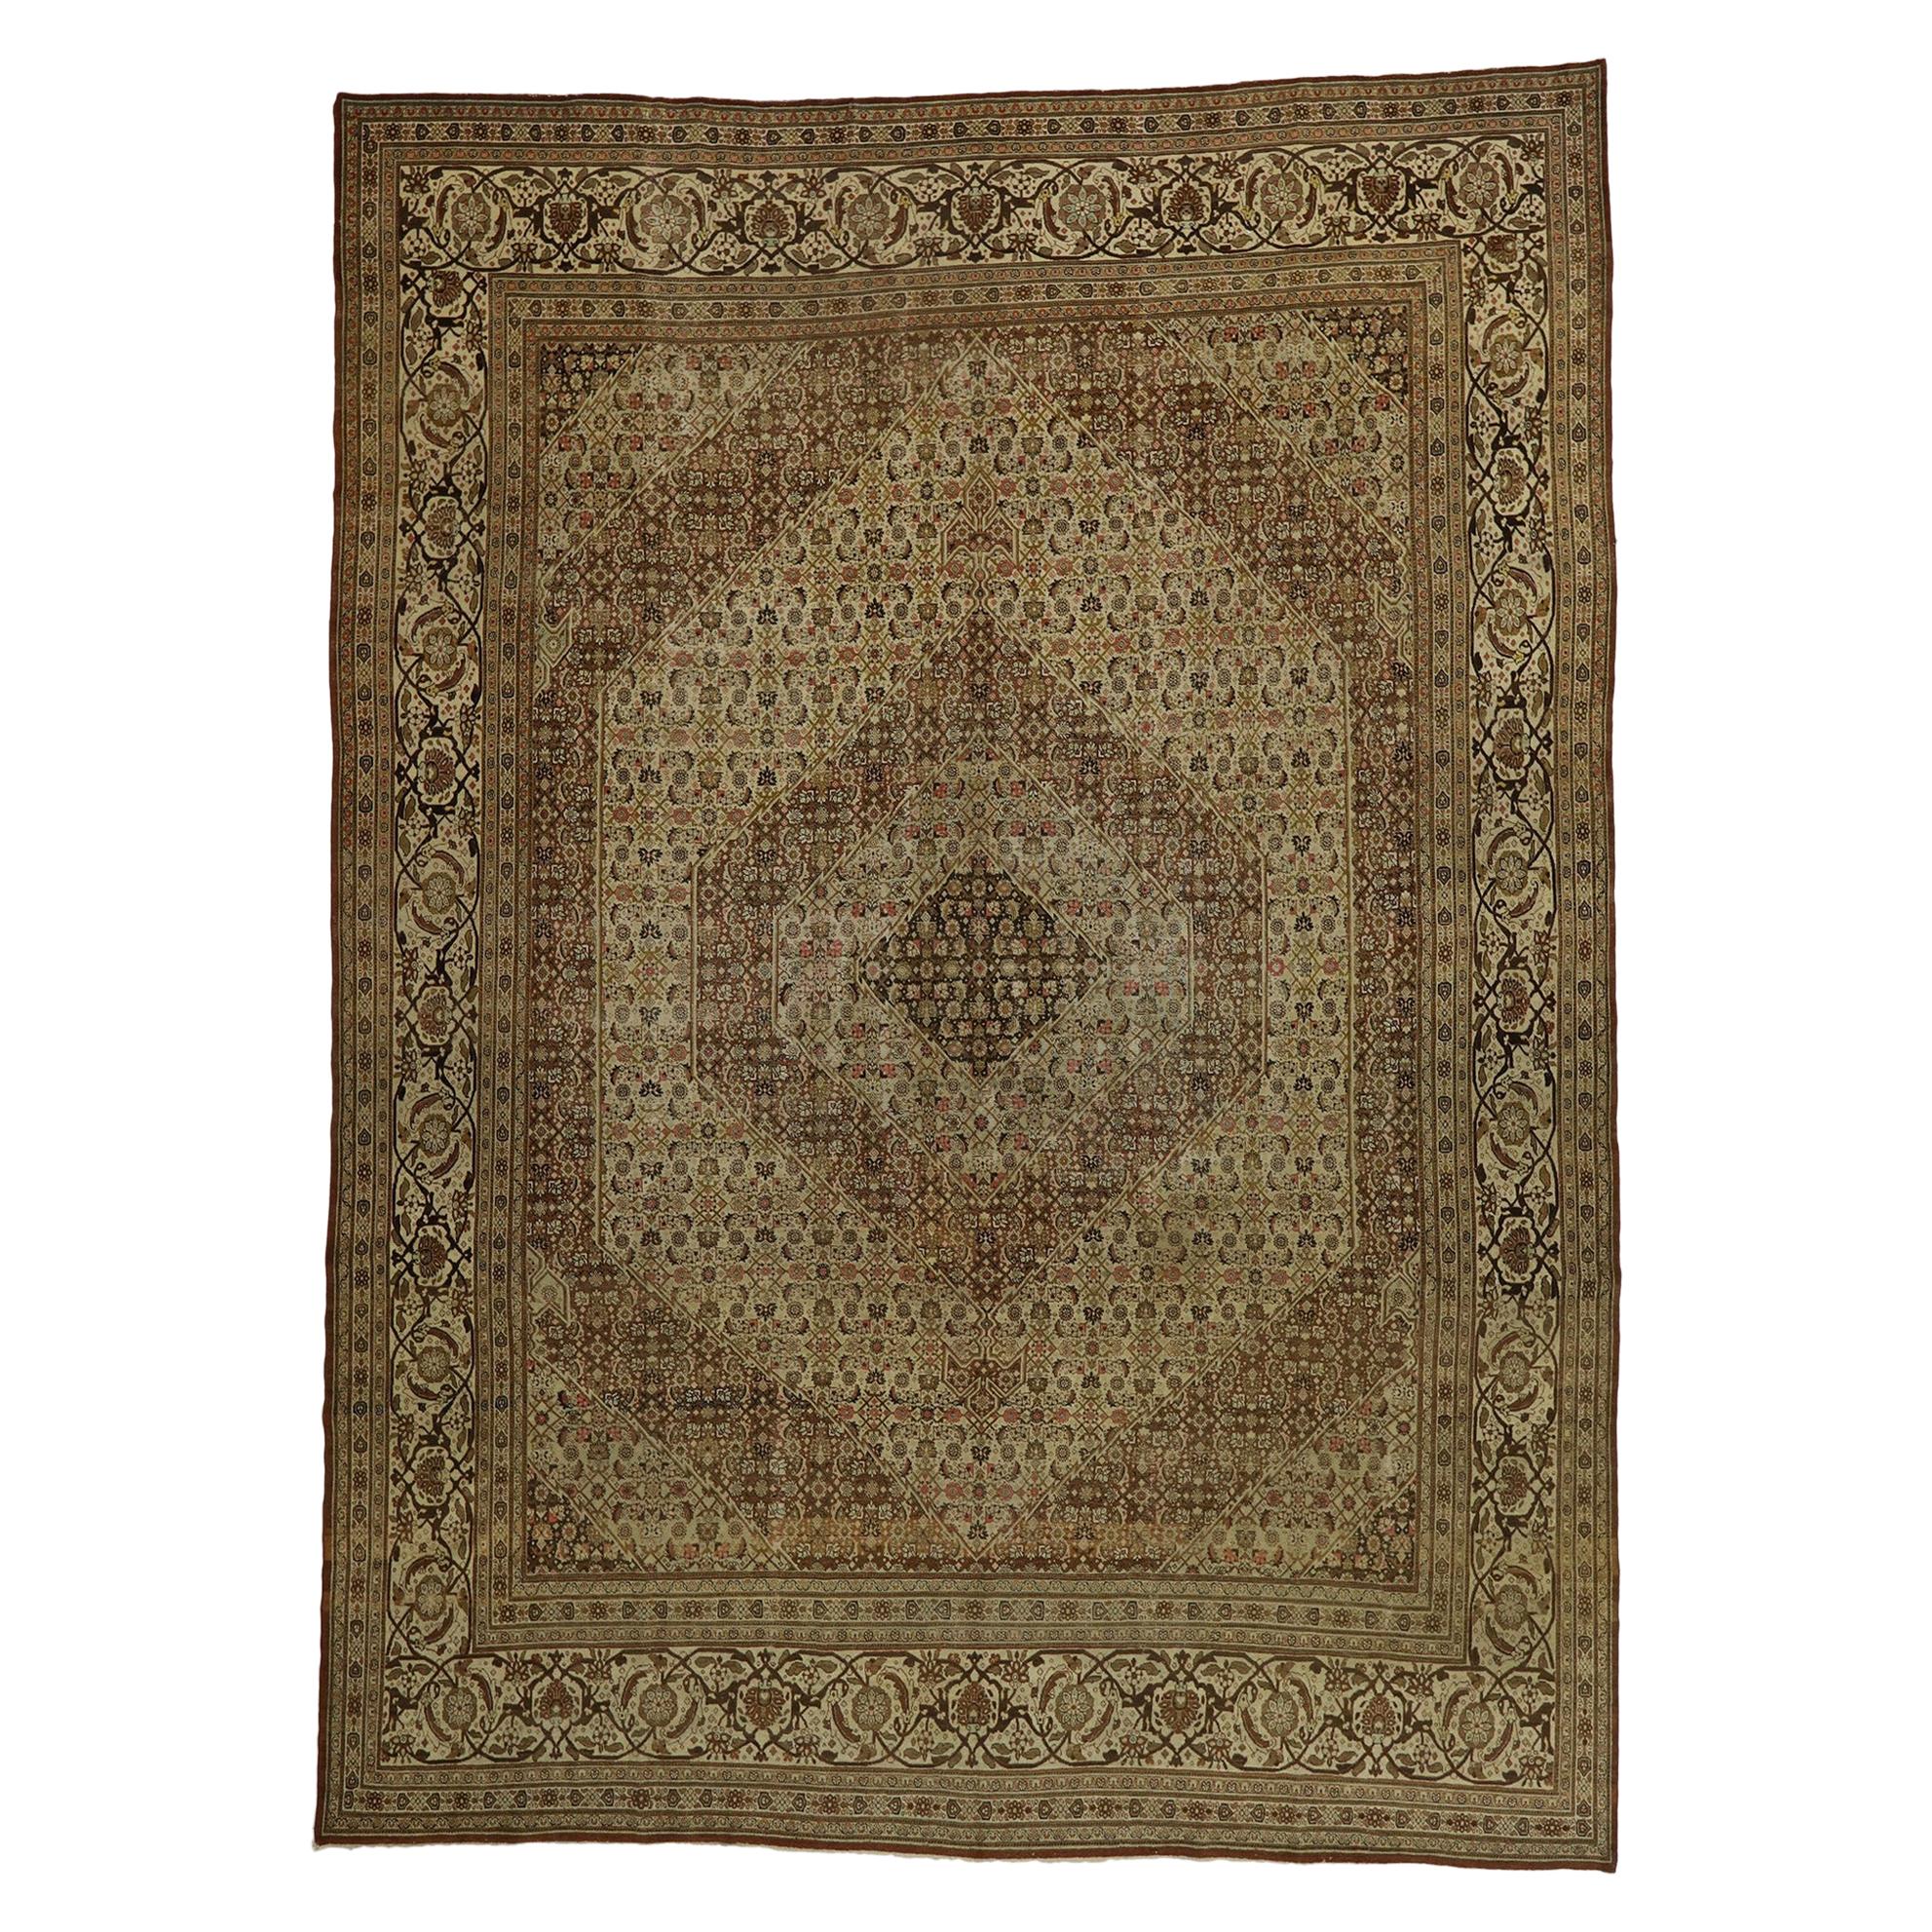 Antique Persian Tabriz Rug, Rustic Sensibility Meets Earth-Tone Elegance